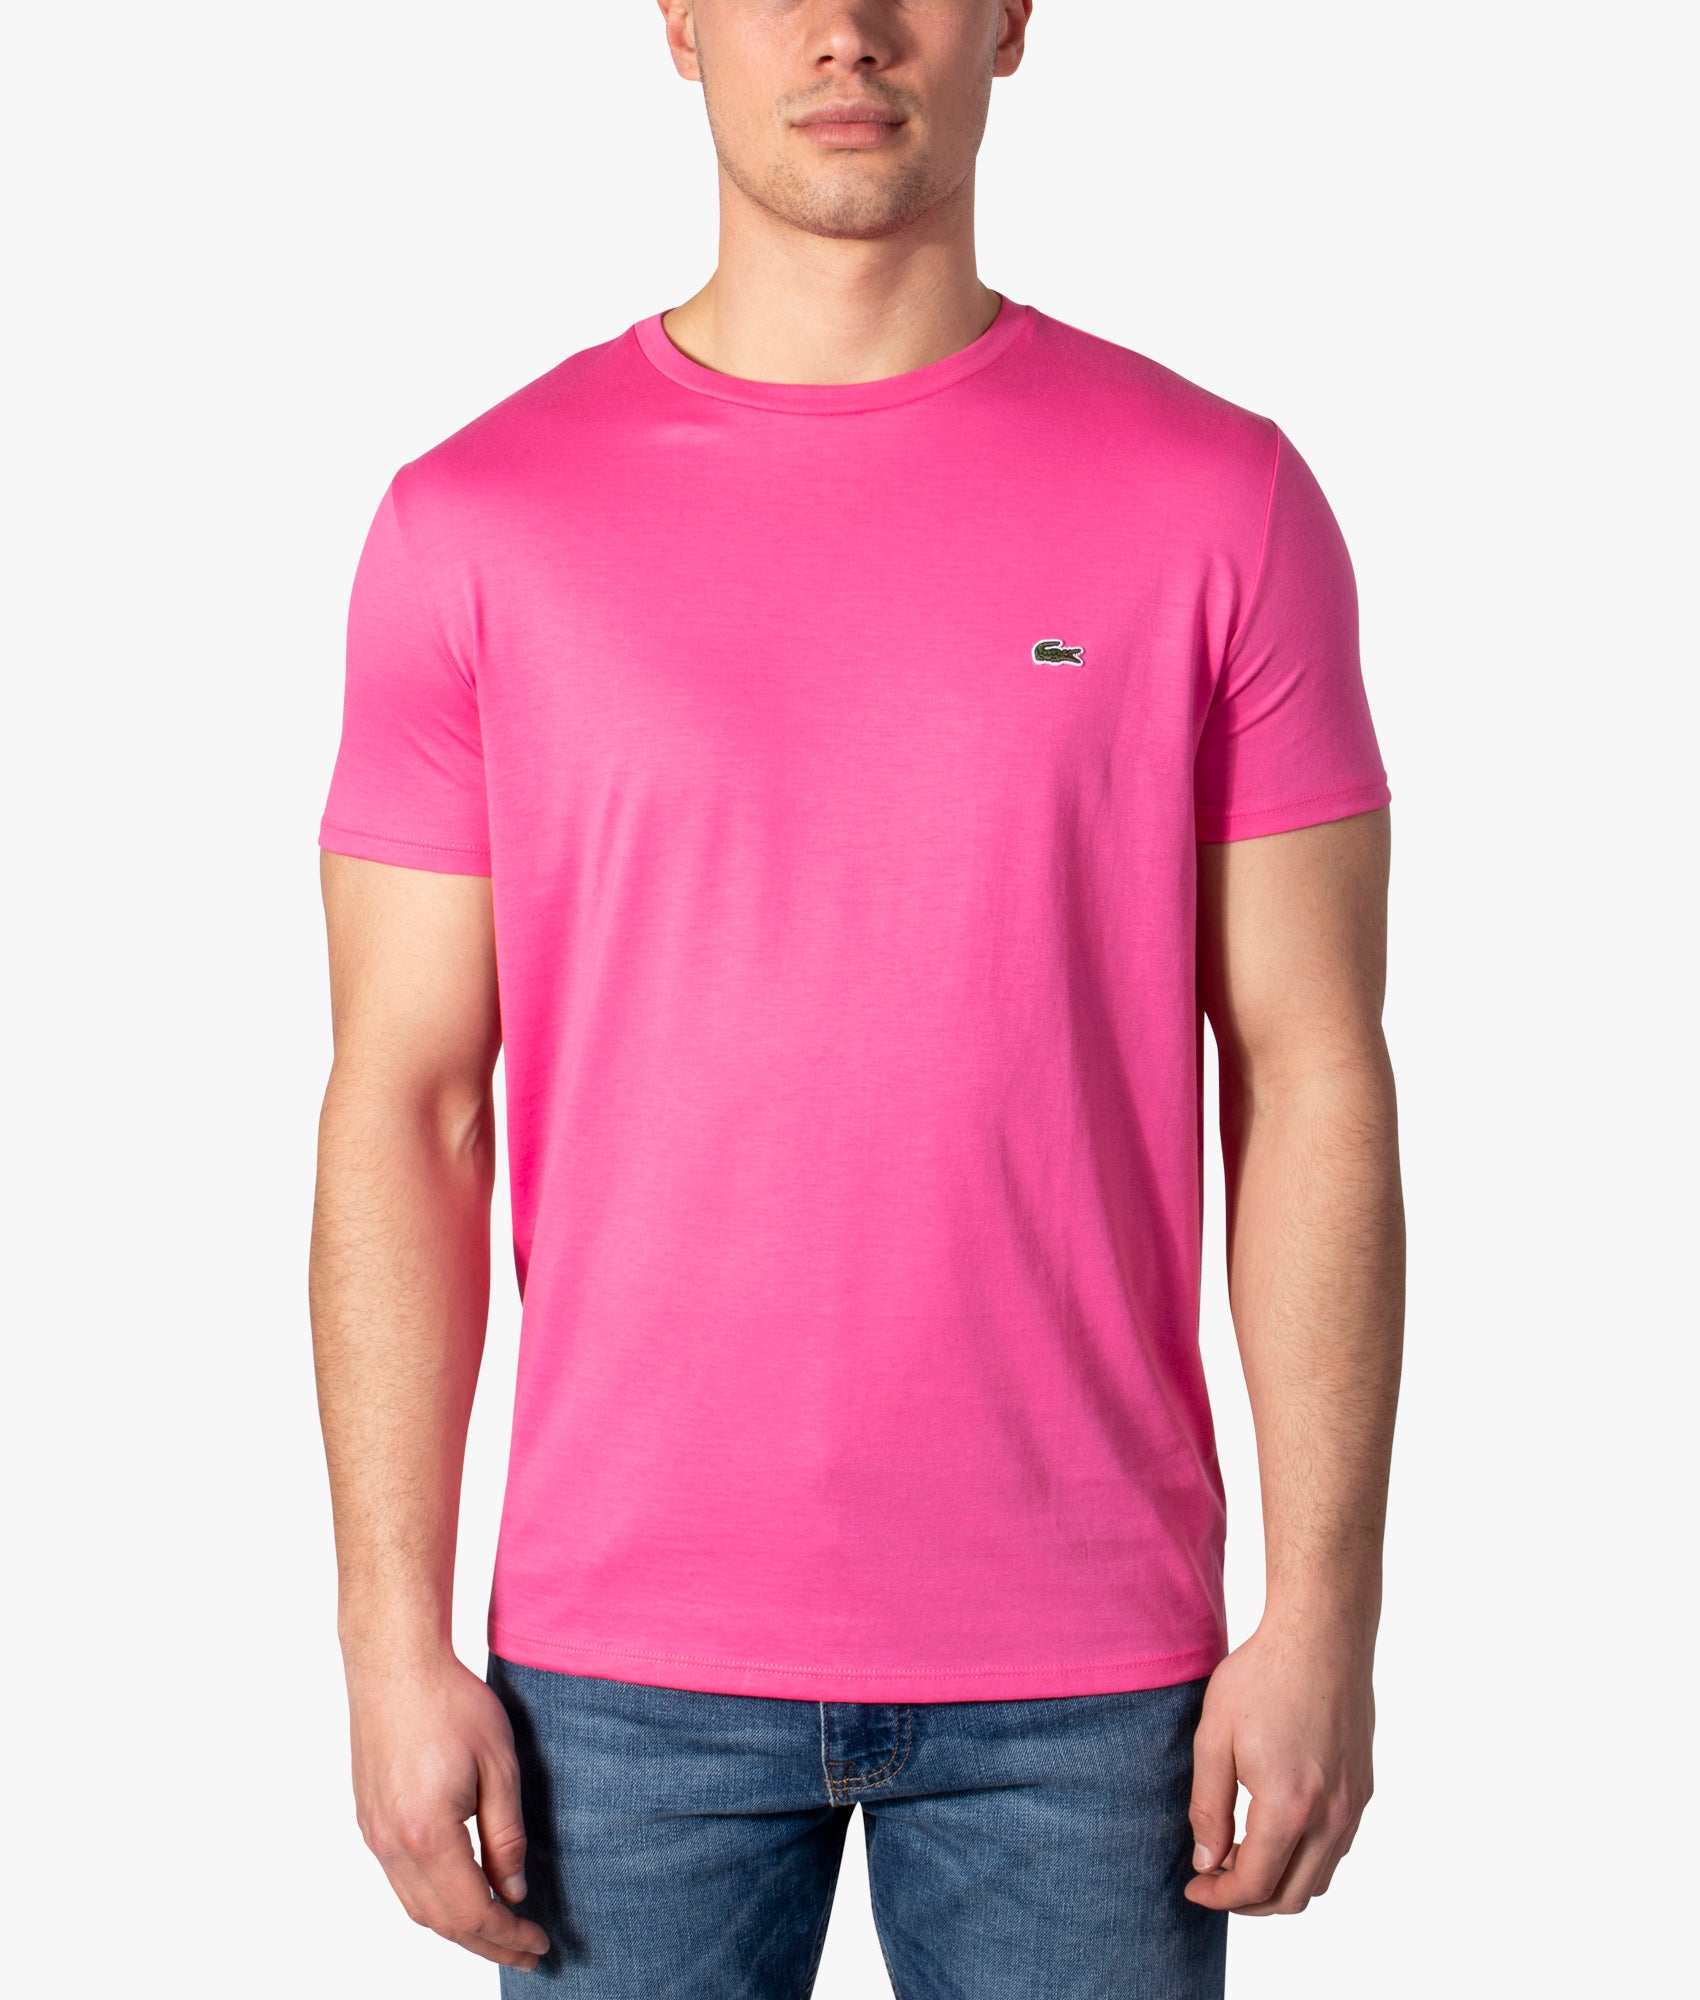 Pima Cotton Croc Logo T-shirt | Lacoste | Pink EQVVS